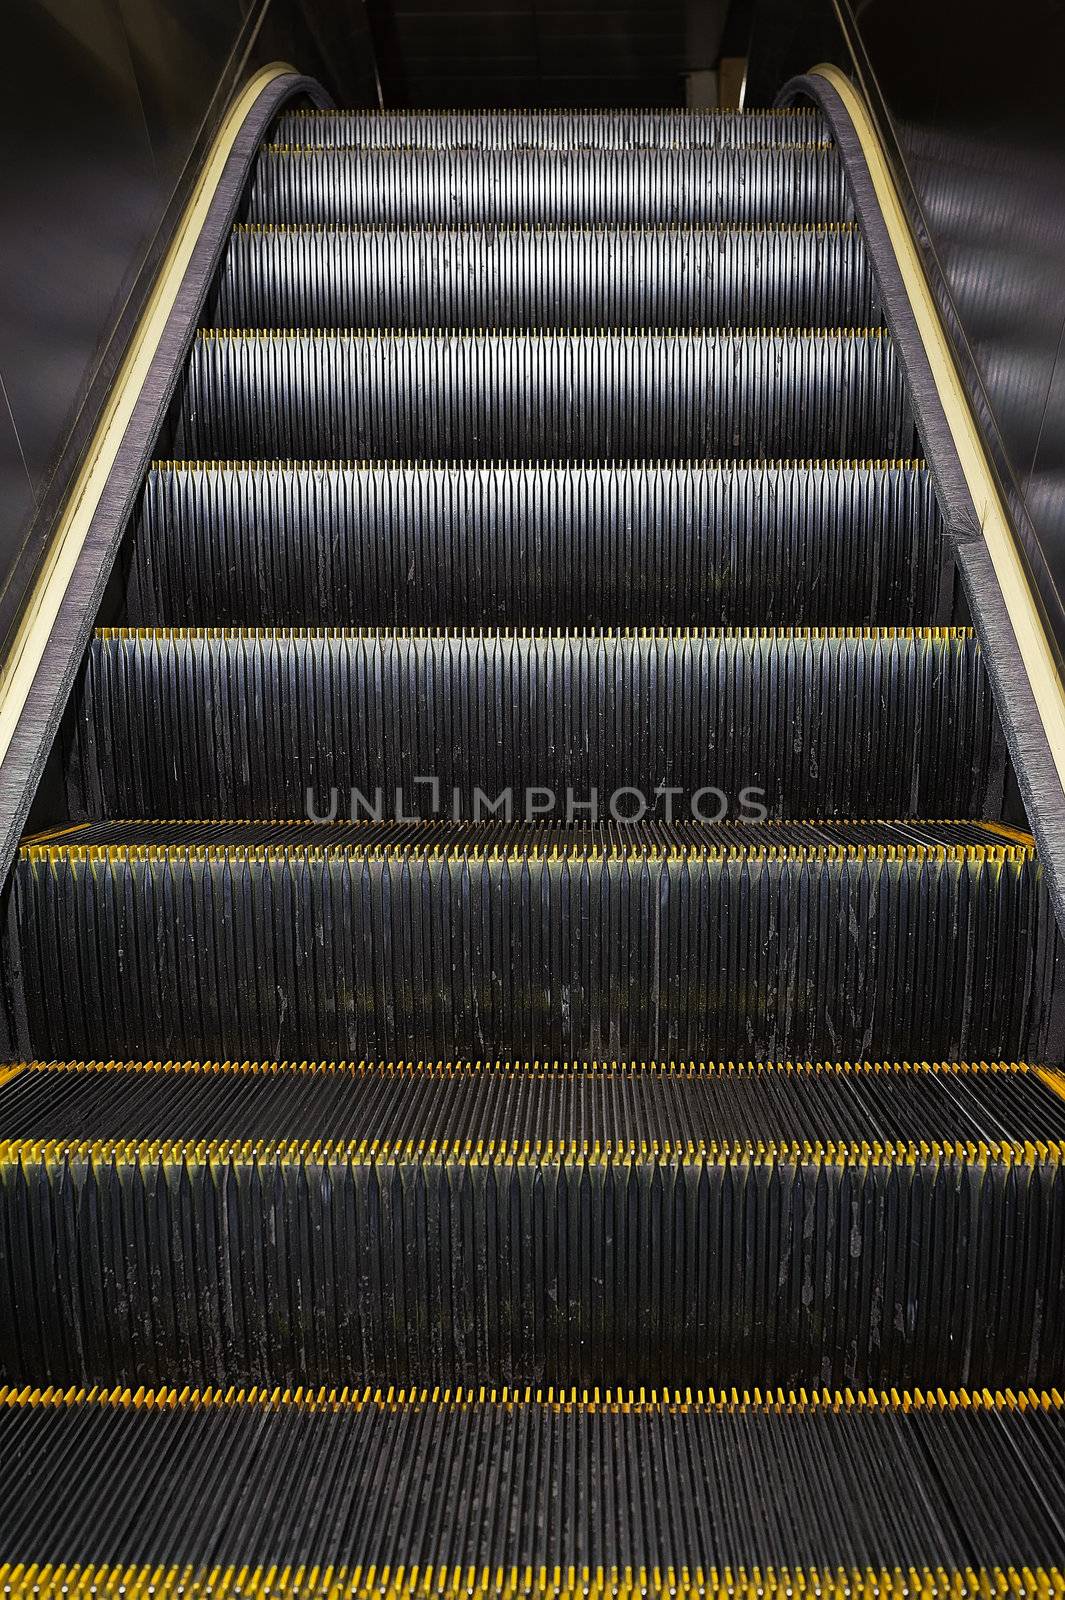 Escalator, closeup image with good metal texture.